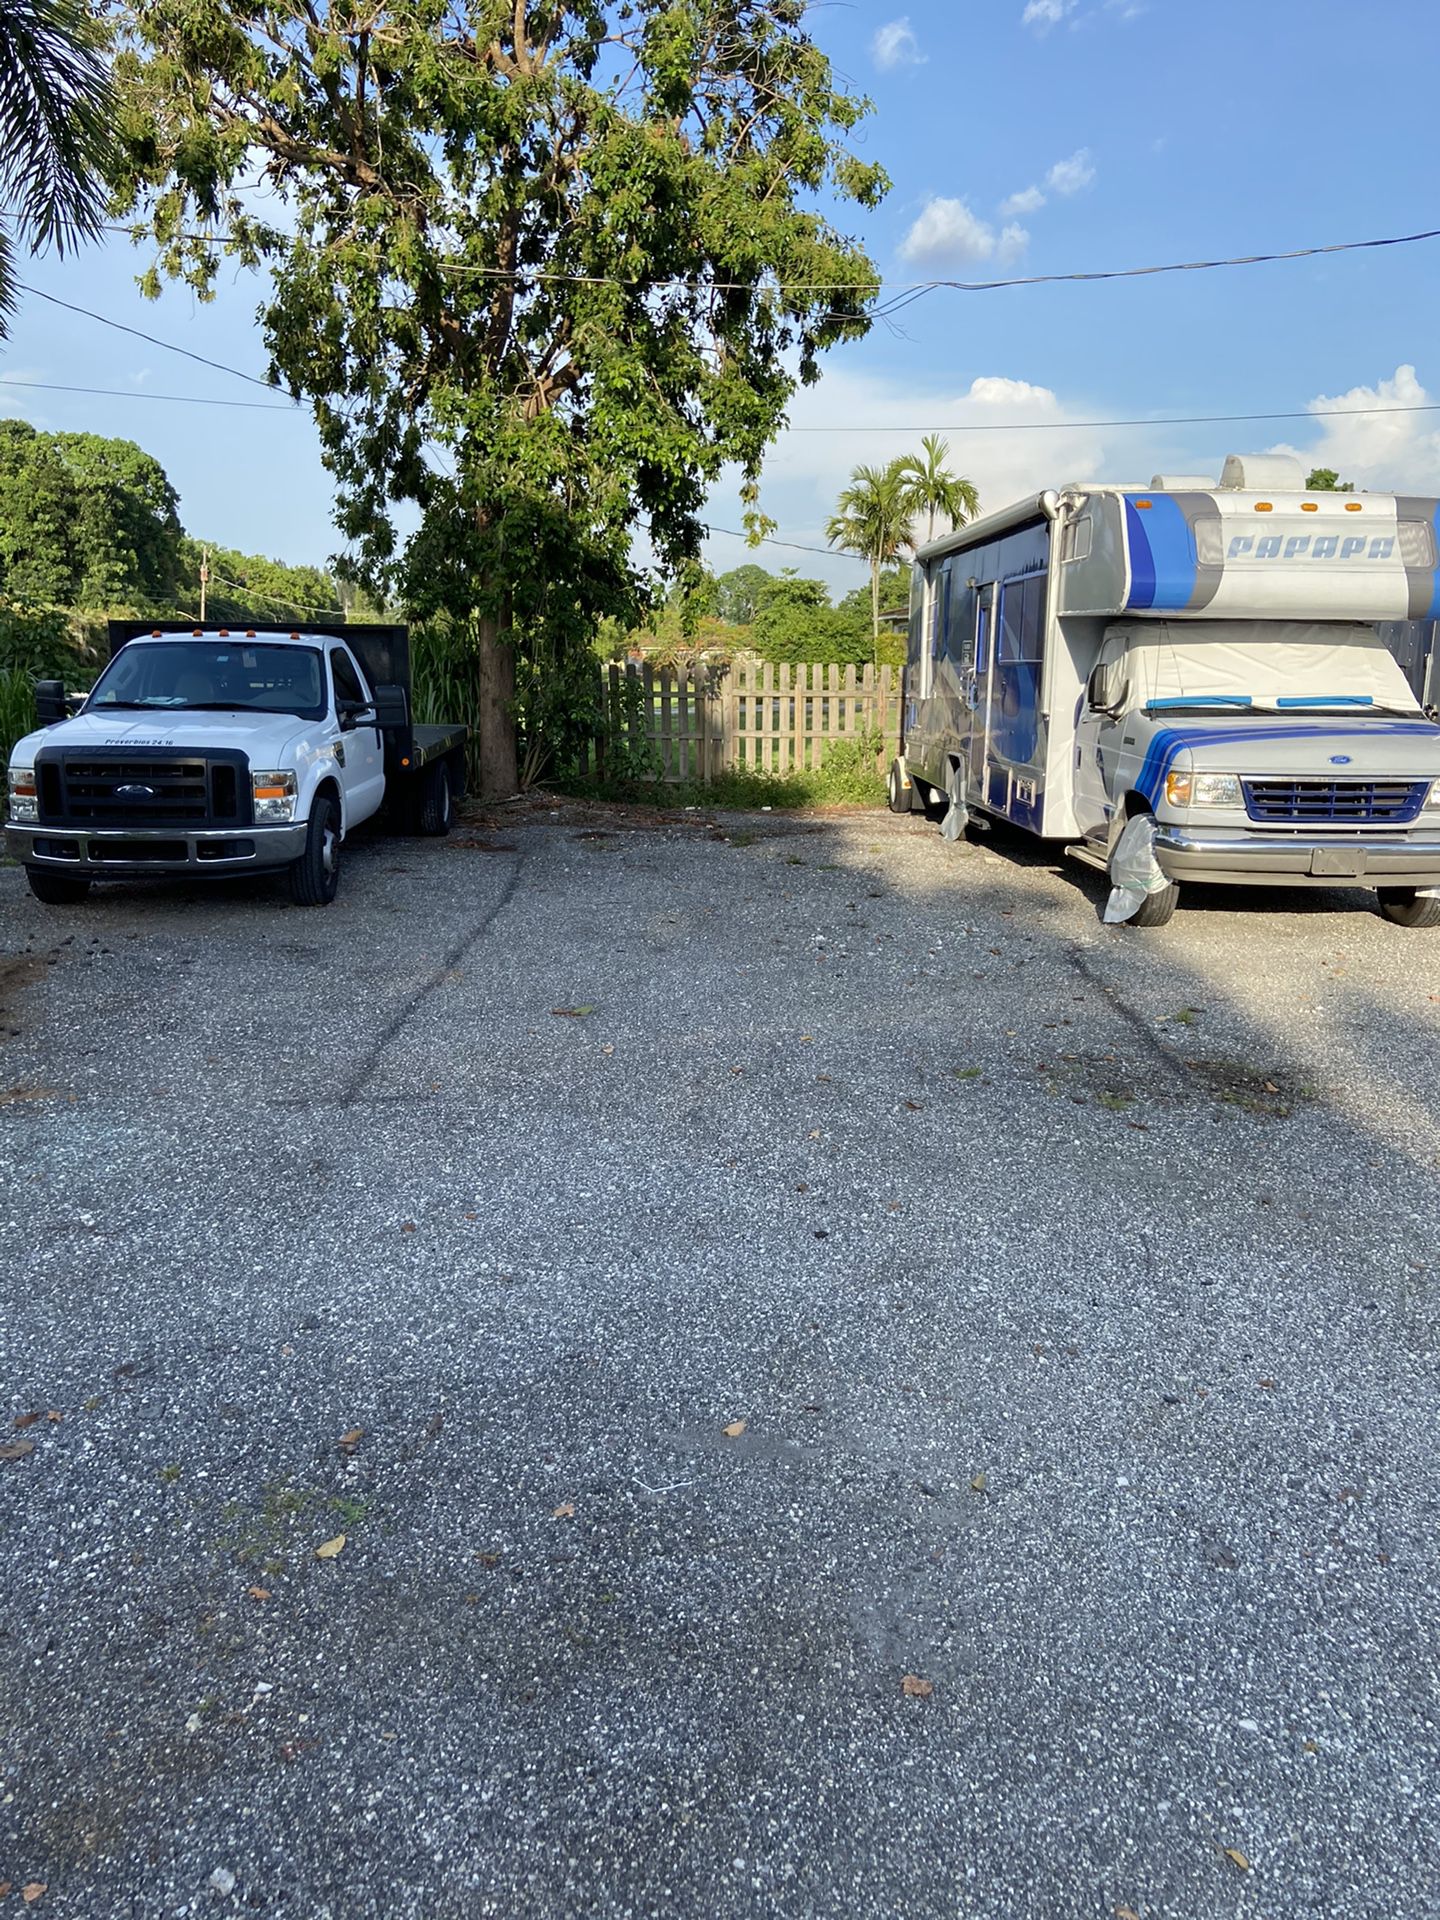 RV storage truck van car trailer parking outdoor